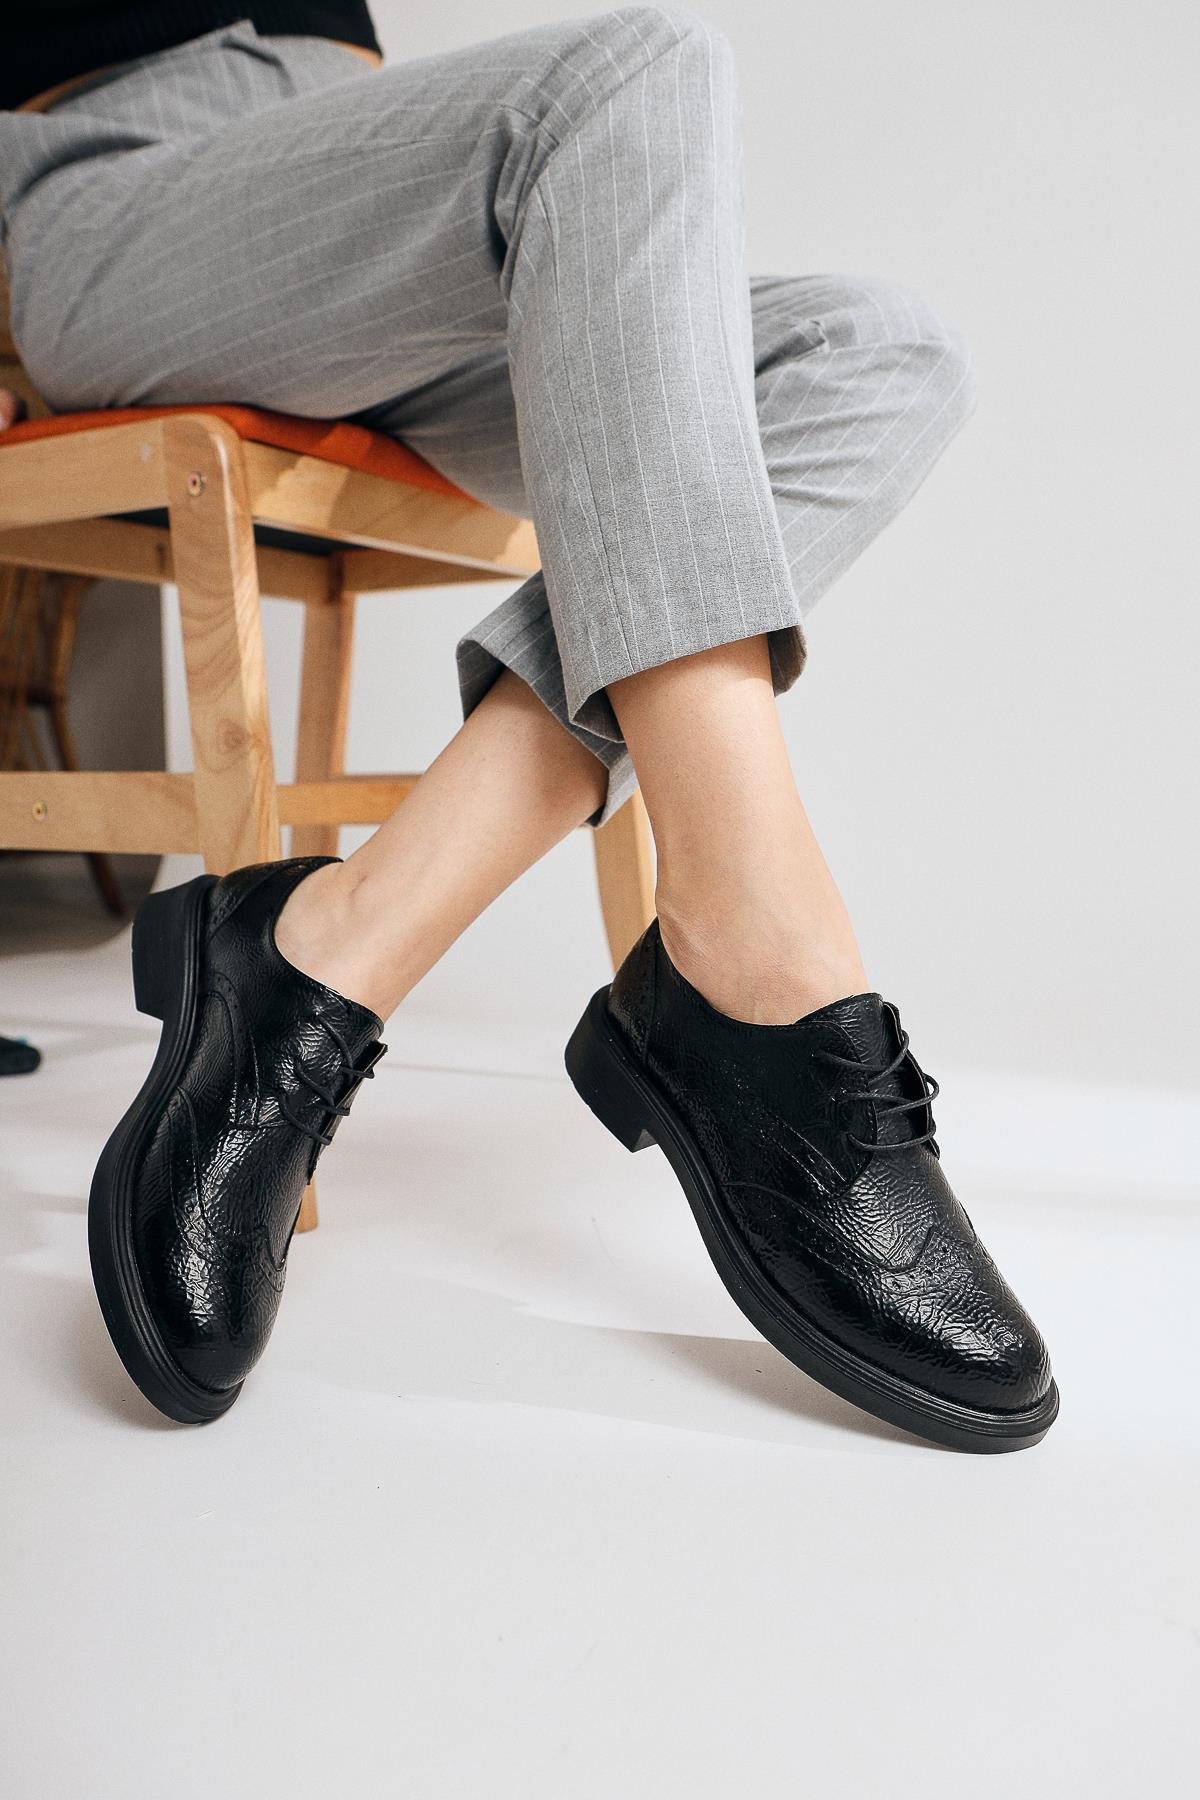 Mitzie Siyah Kırışık Rugan Bağcıklı Oxford Ayakkabı | Limoya.com ile Modayı  Keşfet!